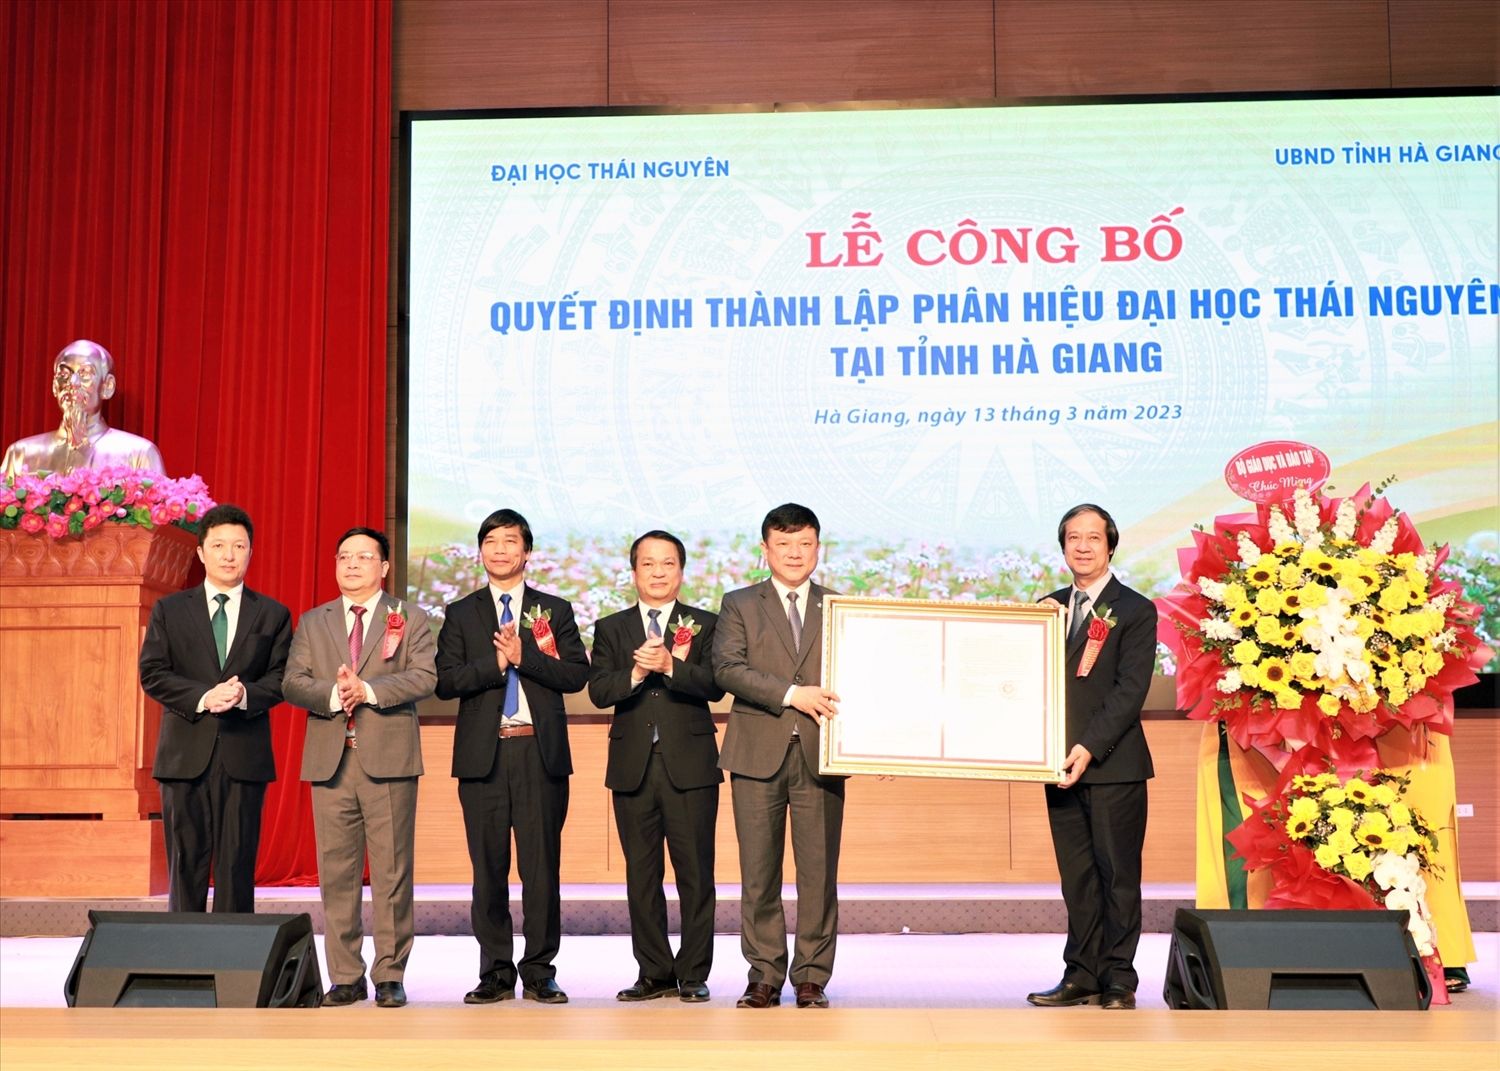 Bộ trưởng Bộ GD&ĐT Nguyễn Kim Sơn trao Quyết định thành lập Phân hiệu Đại học Thái Nguyên tại Hà Giang.